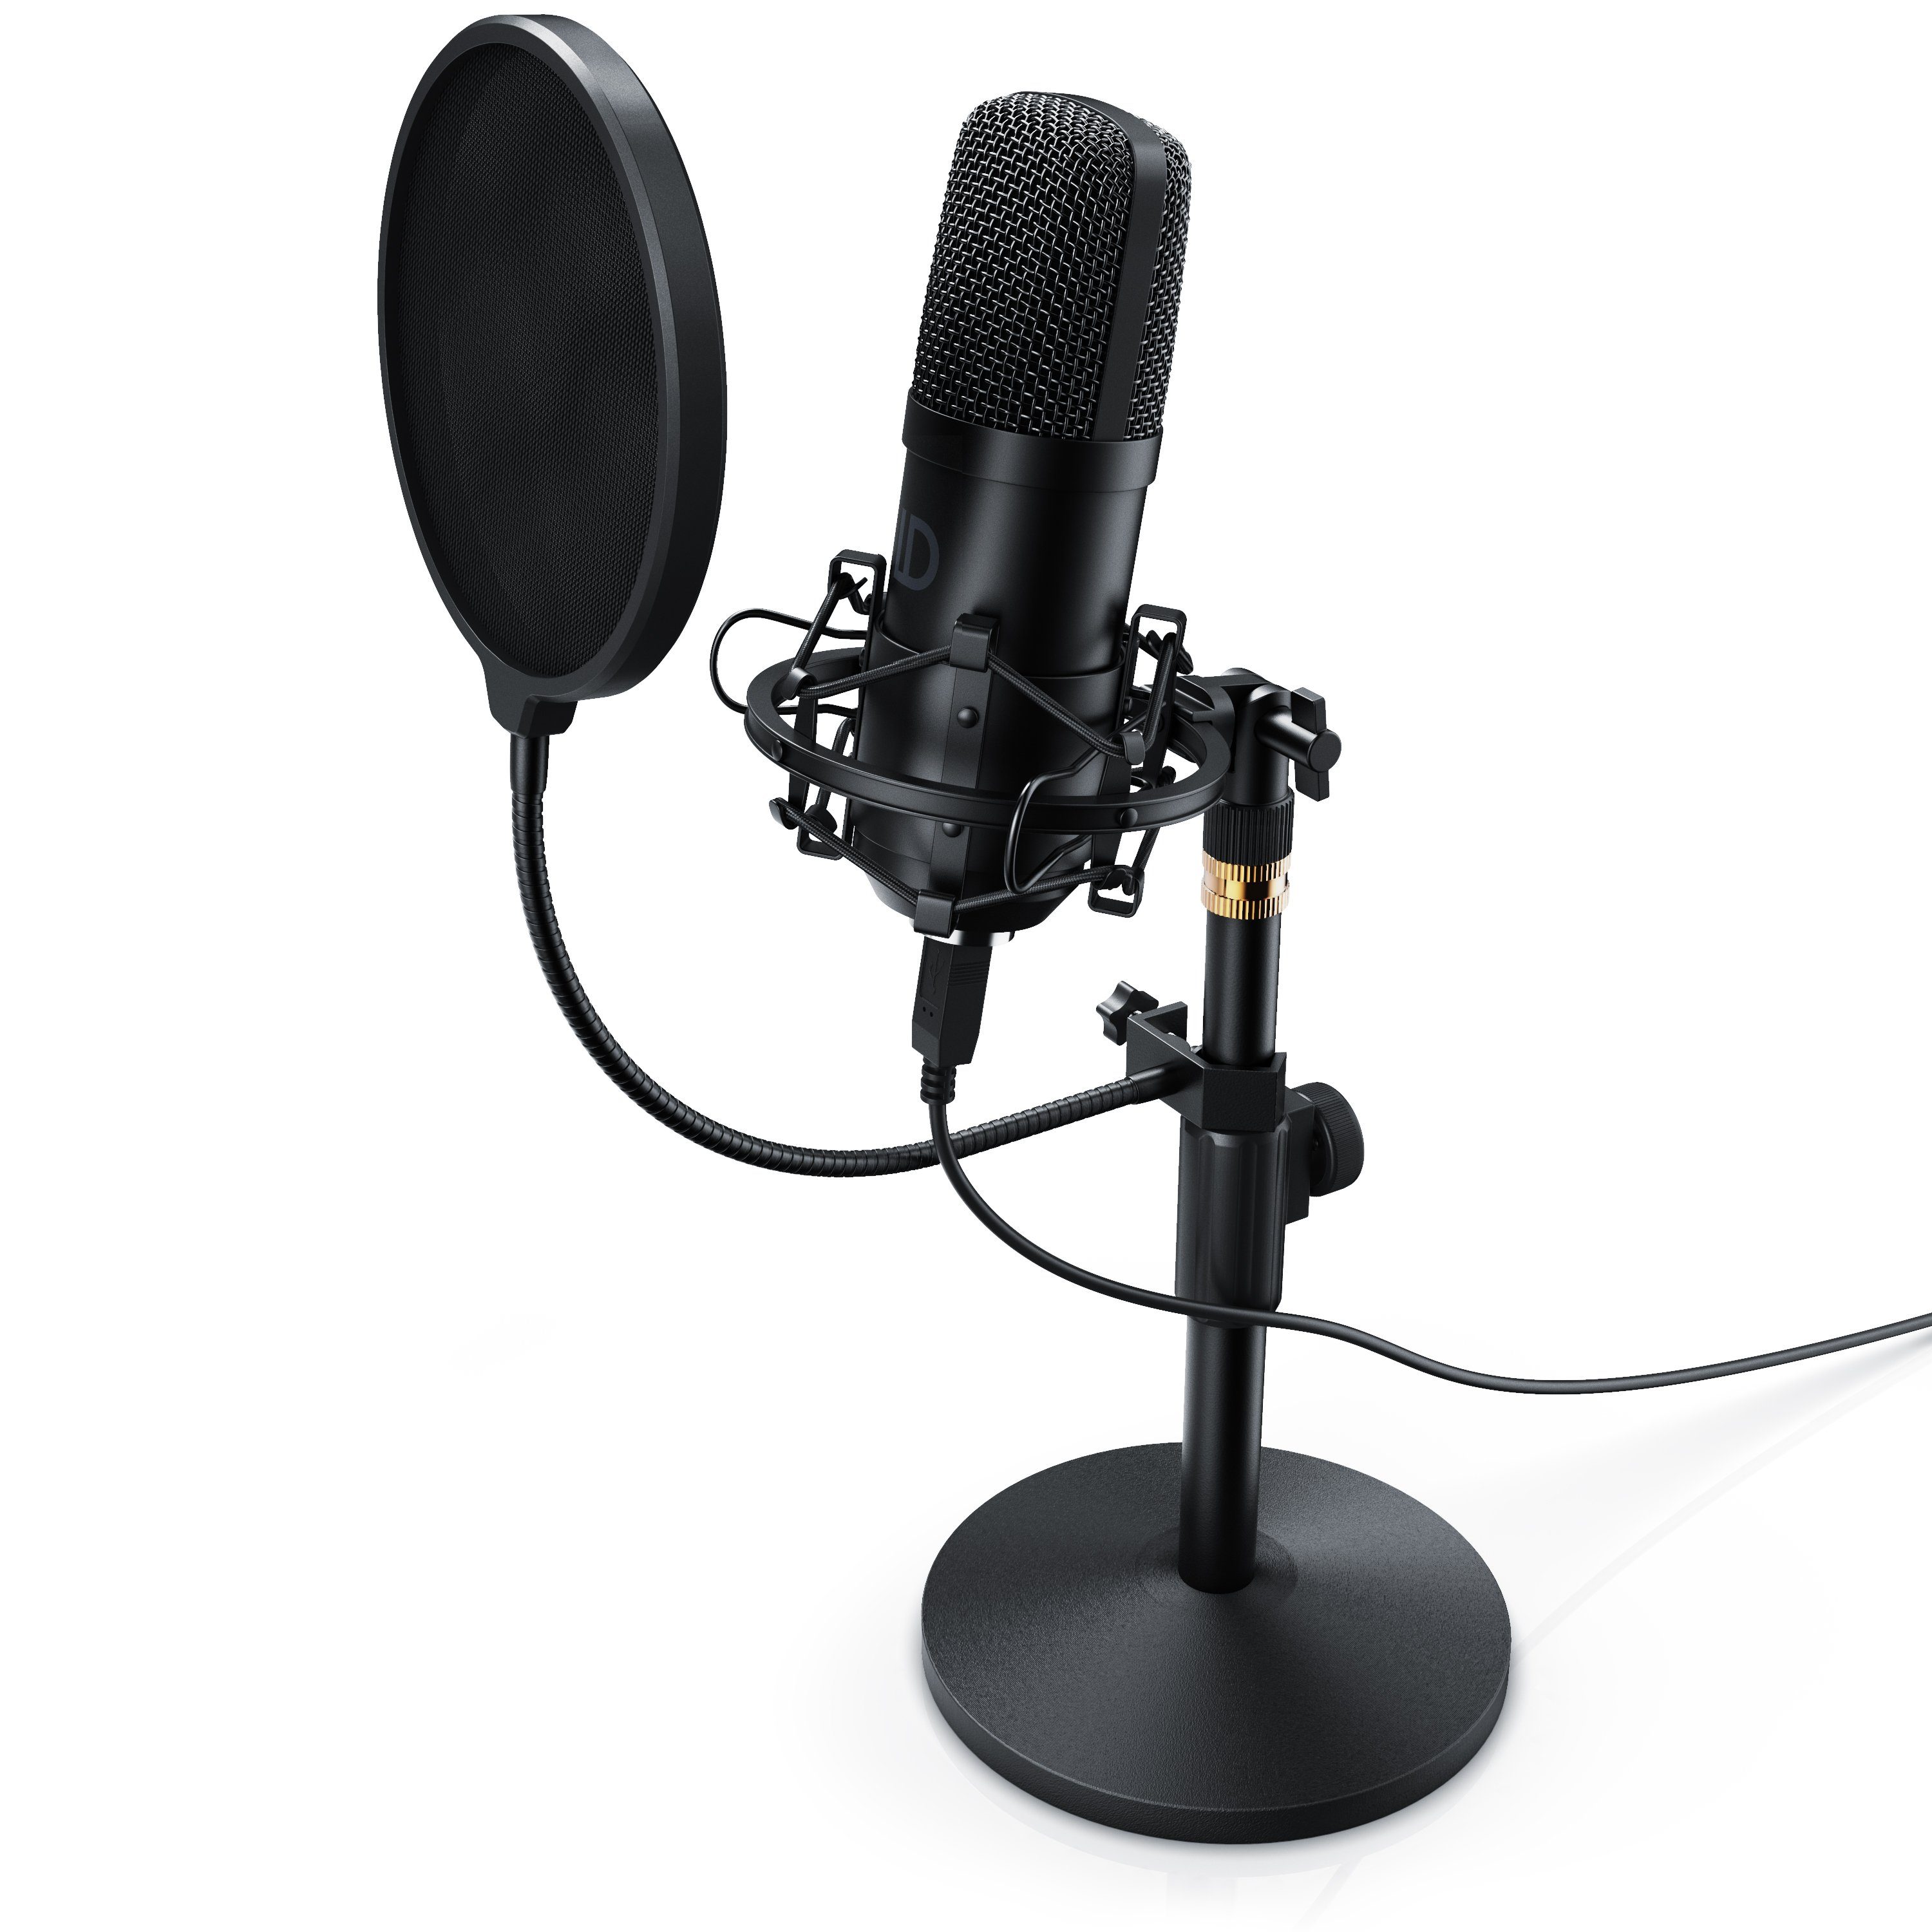 mikrofon mit ständer PC Aufnahme Gaming red Kondensator Mikrofon Set Professionelles Kondensatormikrofon mikrofon gaming mit Ständer XLR zu 3,5 mm Mic Kit Popschutz,für Podcast 